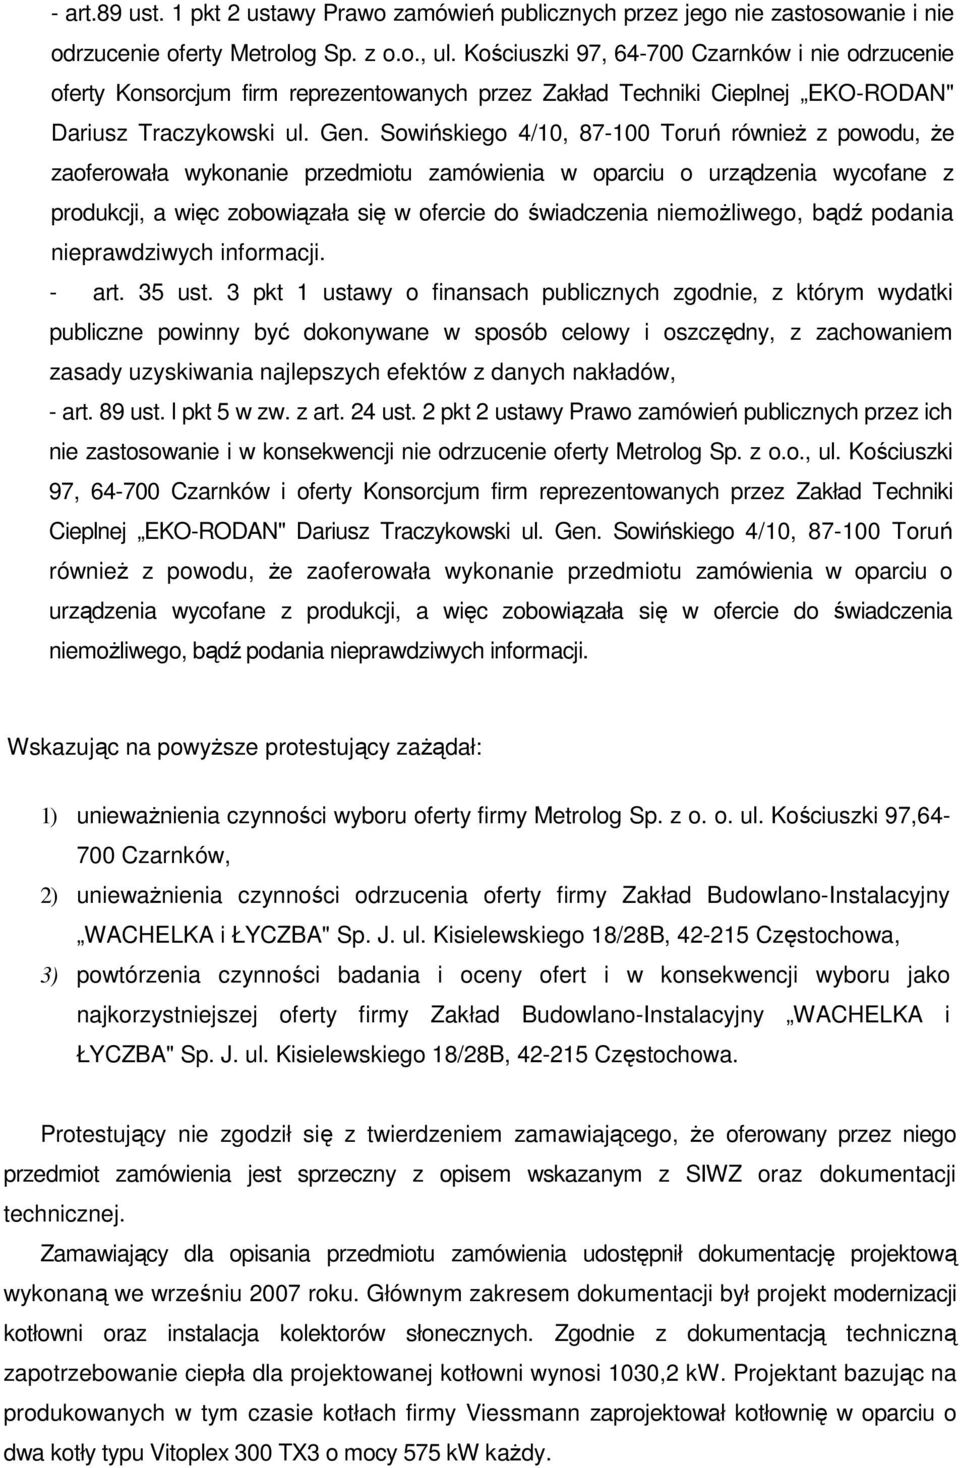 Sowińskiego 4/10, 87-100 Toruń równieŝ z powodu, Ŝe zaoferowała wykonanie przedmiotu zamówienia w oparciu o urządzenia wycofane z produkcji, a więc zobowiązała się w ofercie do świadczenia